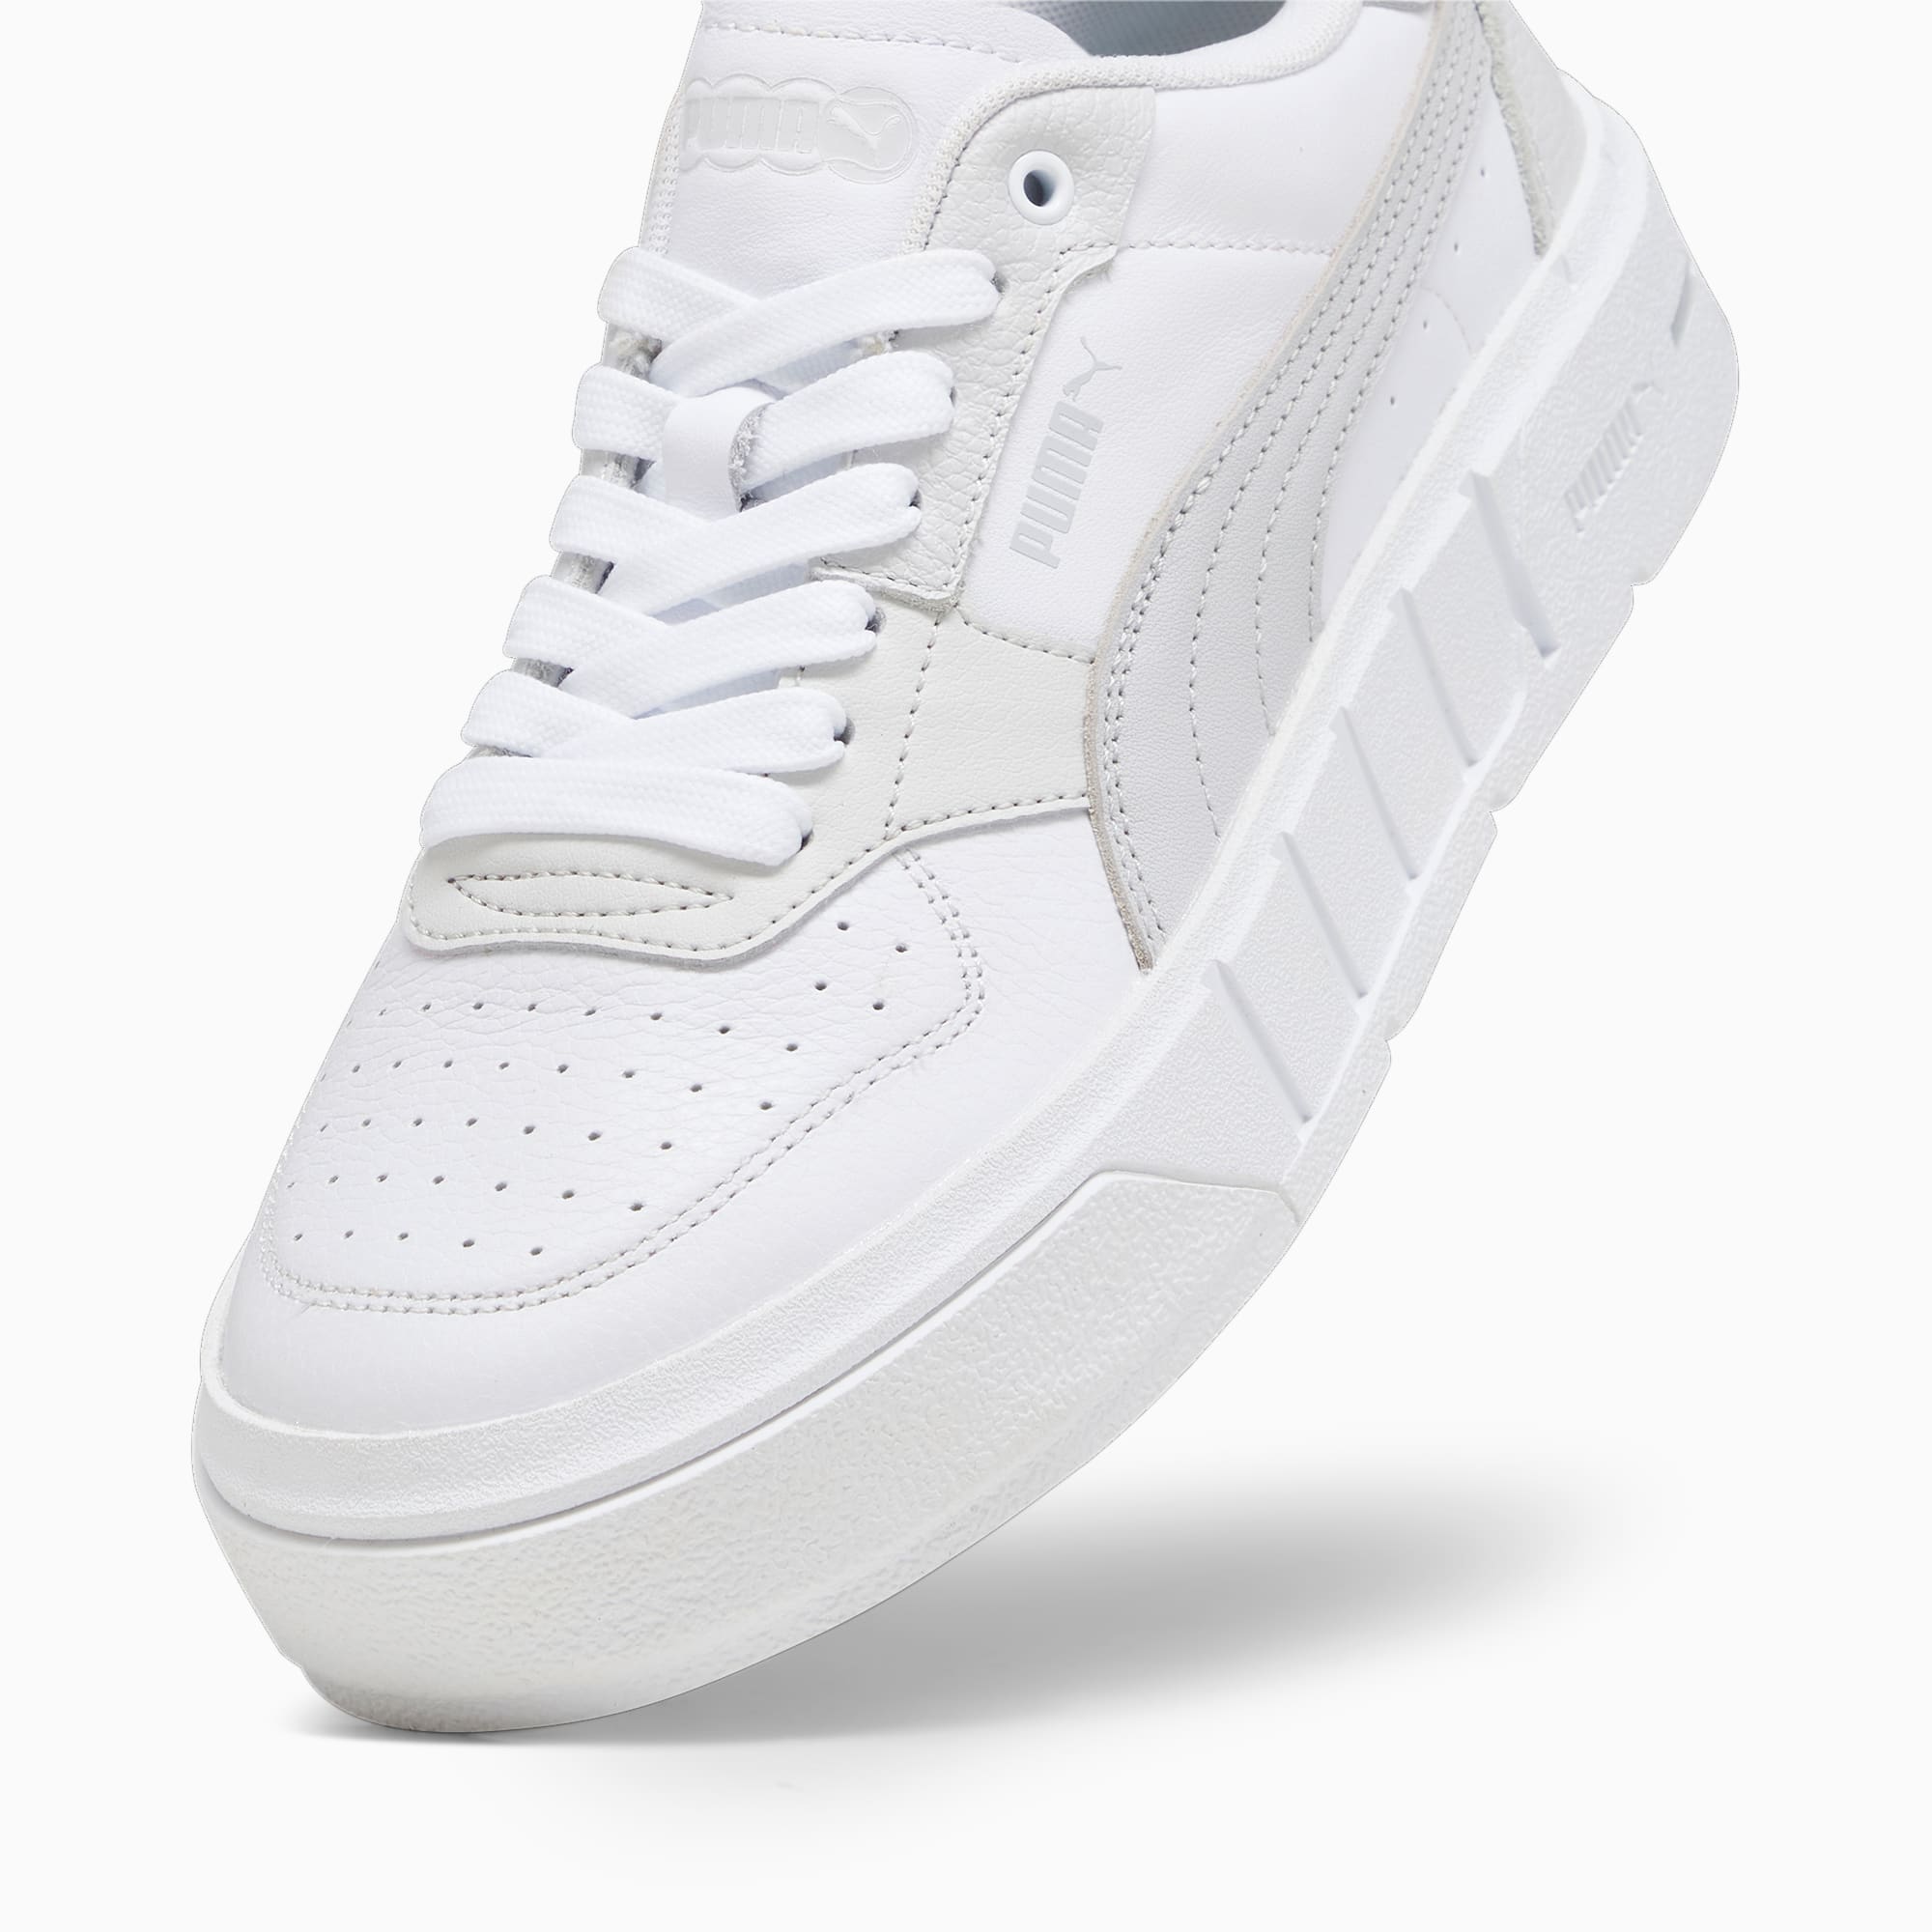 PUMA Cali Court Leather Damskie Sneakersy, Biały / Szary